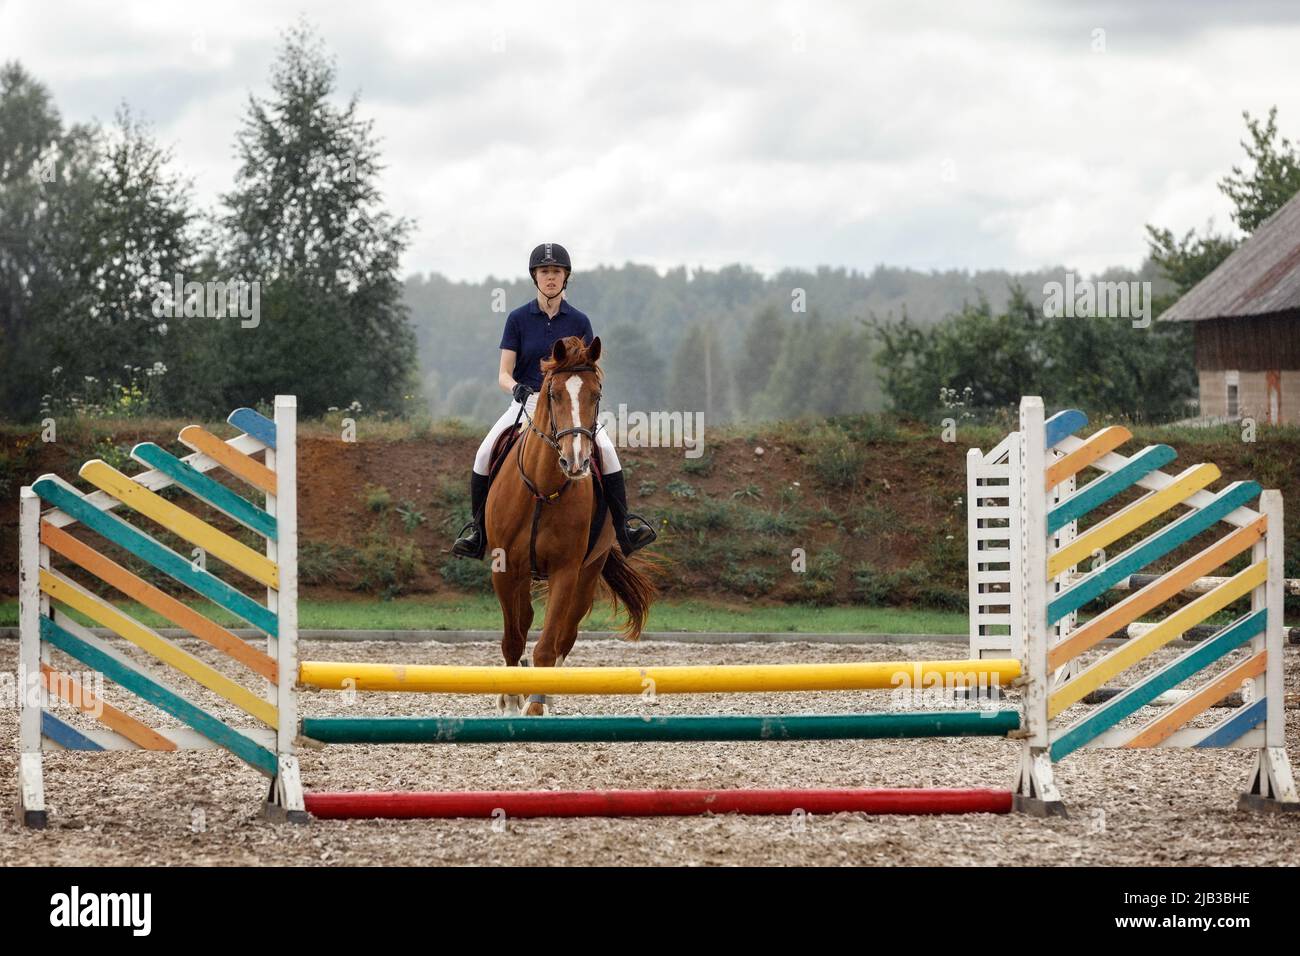 Deporte ecuestre. Joven niña monta a caballo en el campeonato, ella salta a través de la barrera con el caballo de color cereza-marrón. Foto de stock